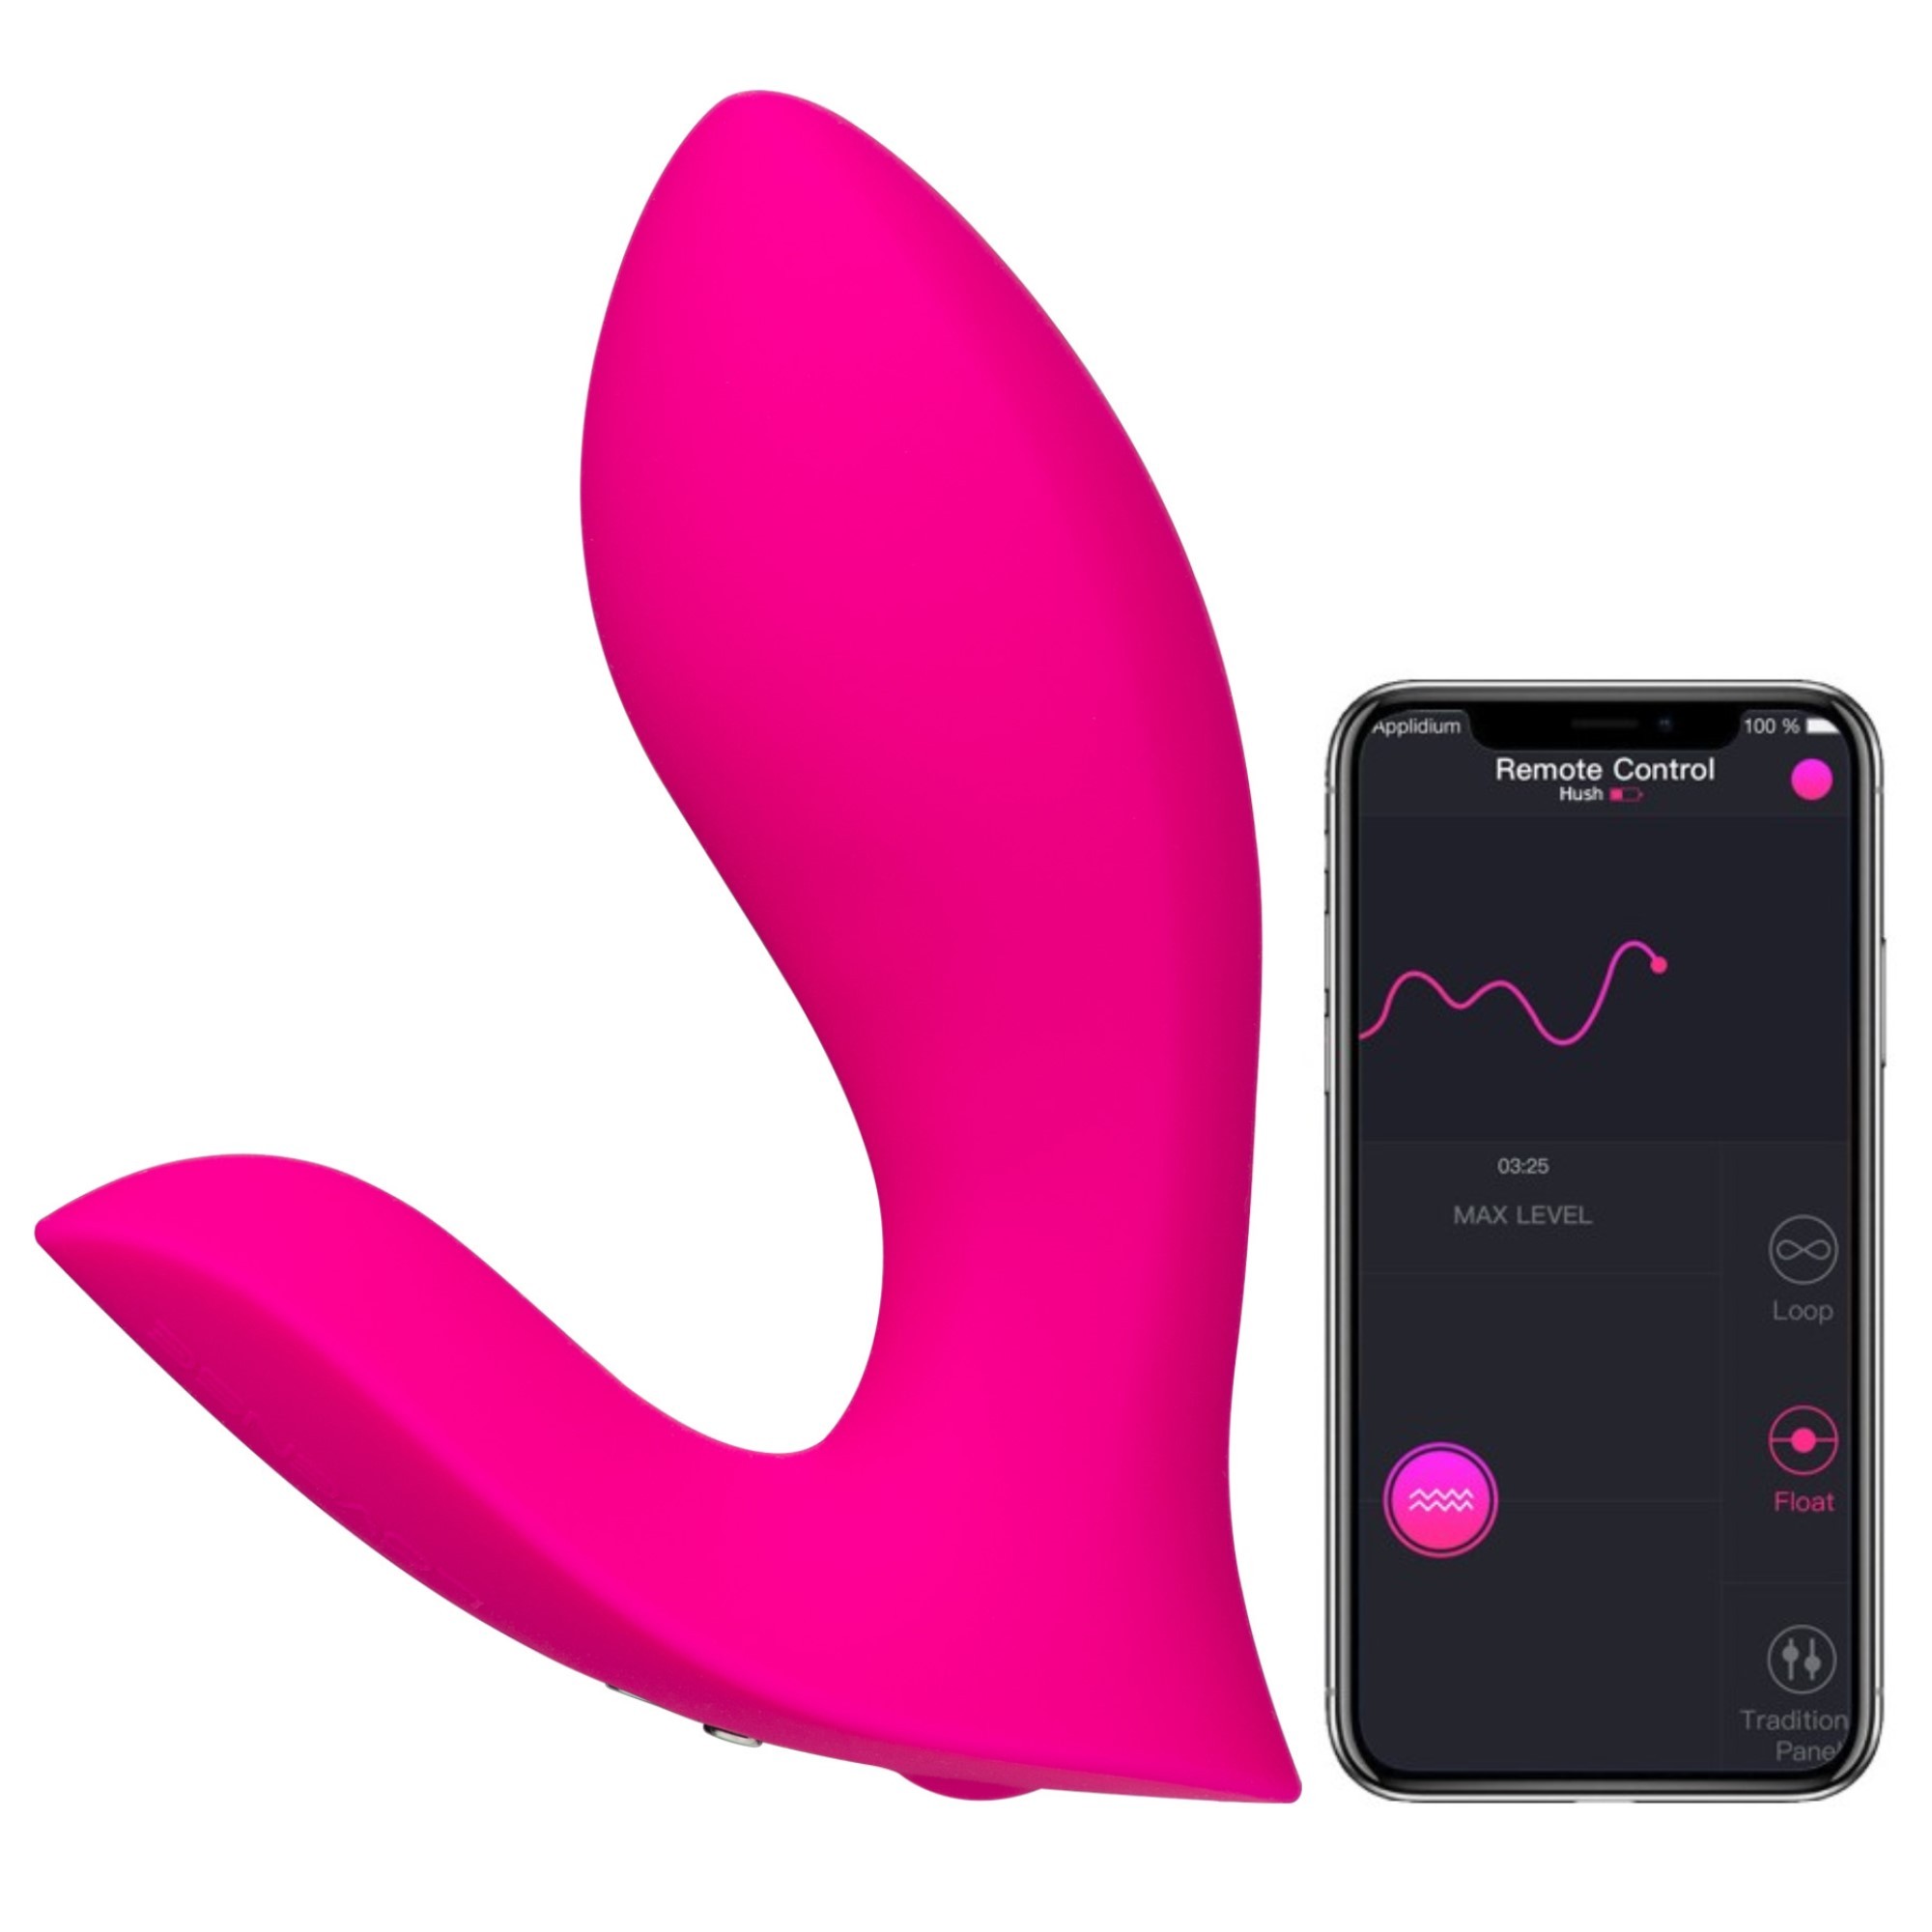 Lovense Flexer Telefon Kontrollü Giyilebilir Vibratör